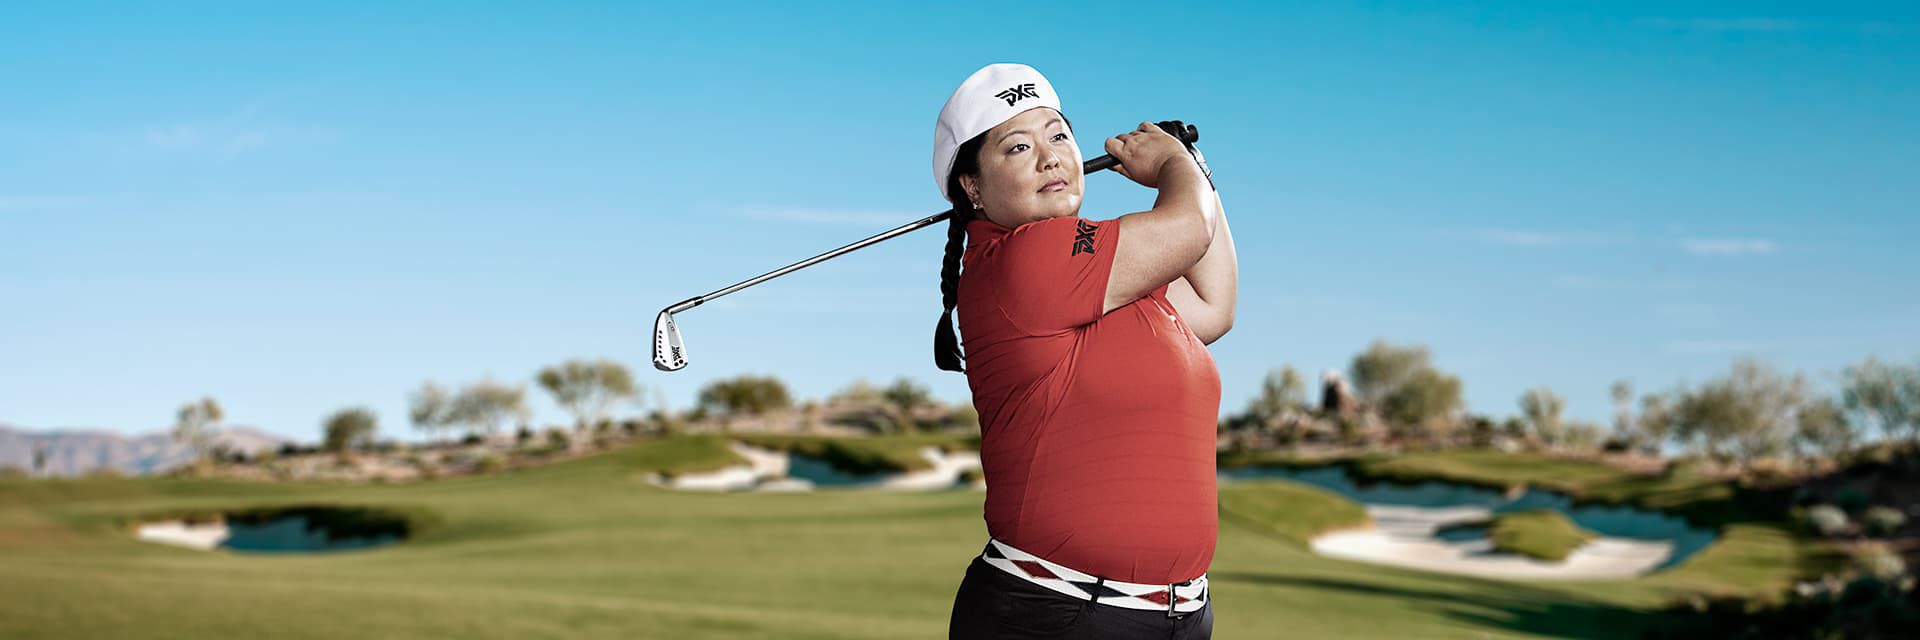 PXG LPGA Tour Pro Christina Kim swinging an iron on course.